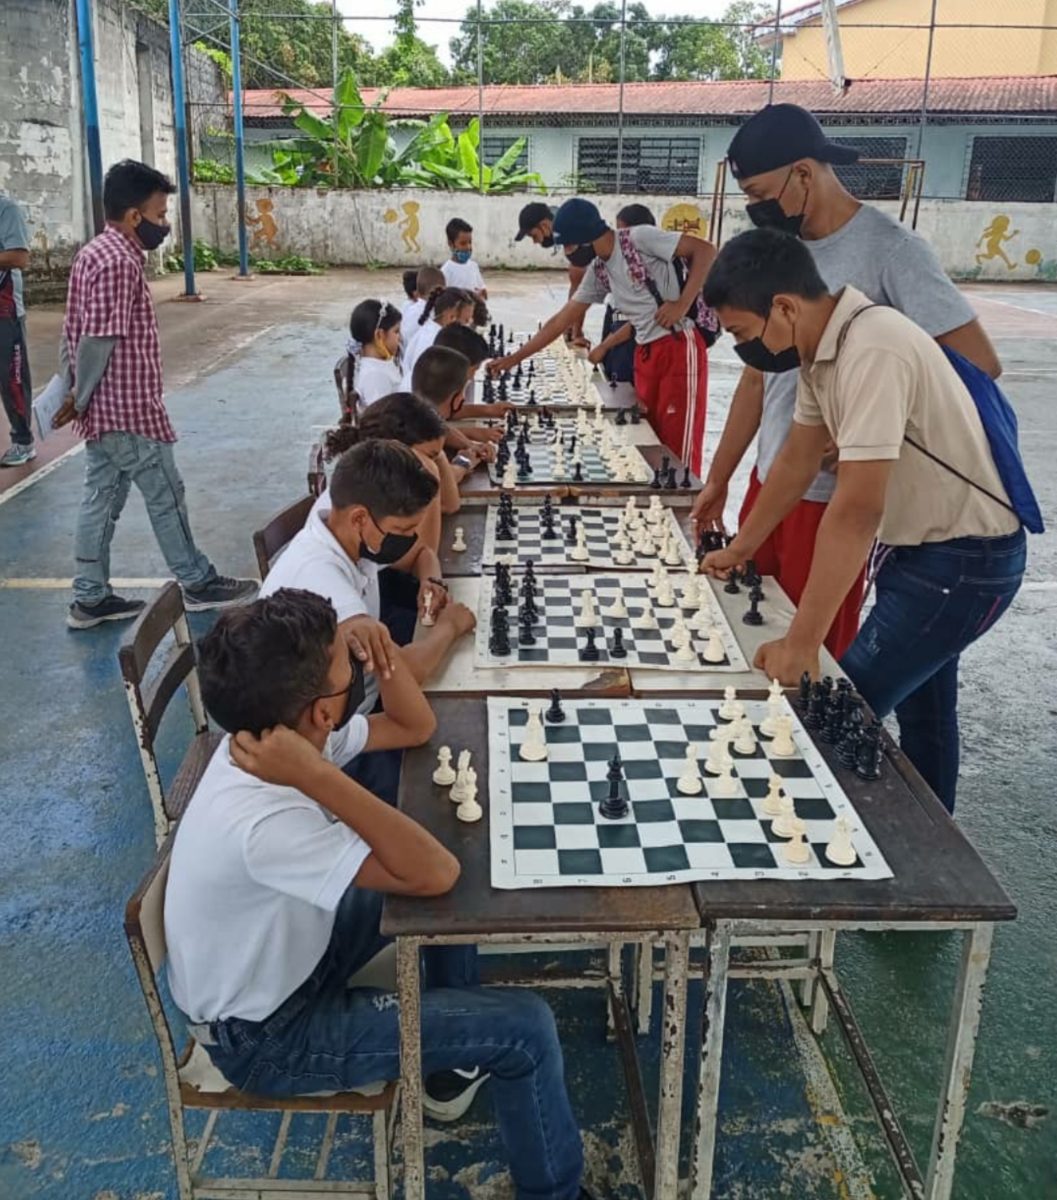 monagas celebra en el 17 aniversario del ajedrez en venezuela laverdaddemonagas.com inshot 20220426 1723049551